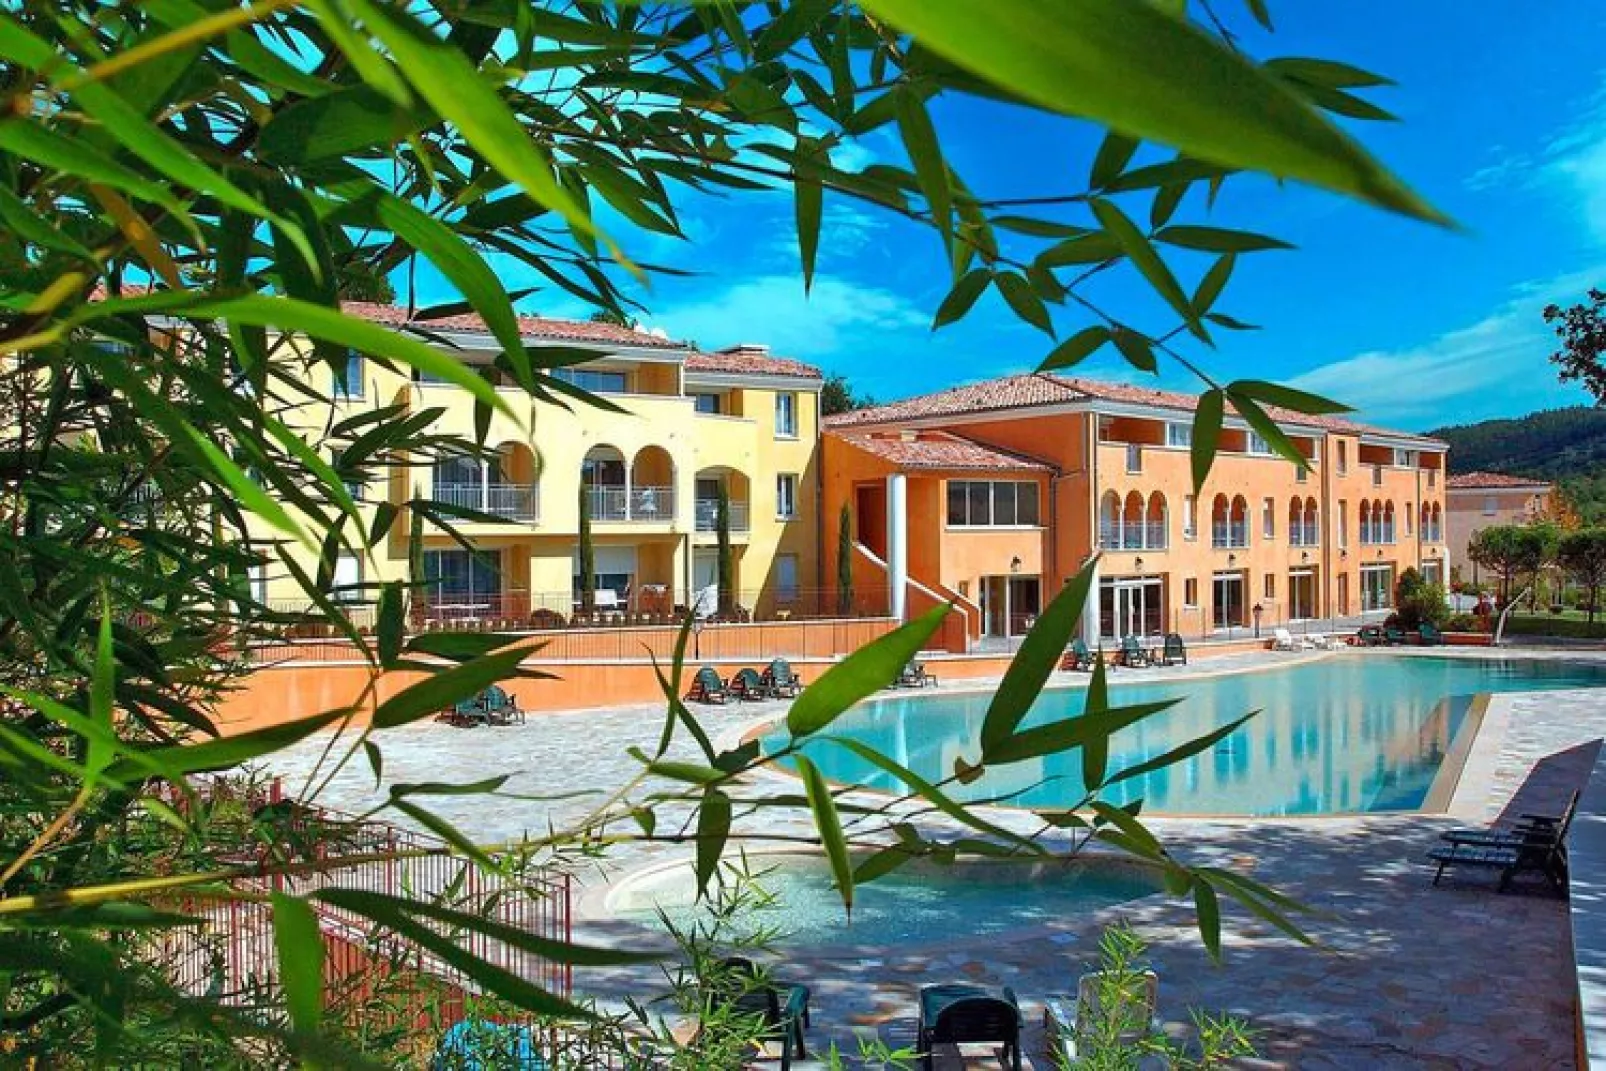 Appartement in Gréoux-les-Bains met gedeeld zwembad-Zwembad